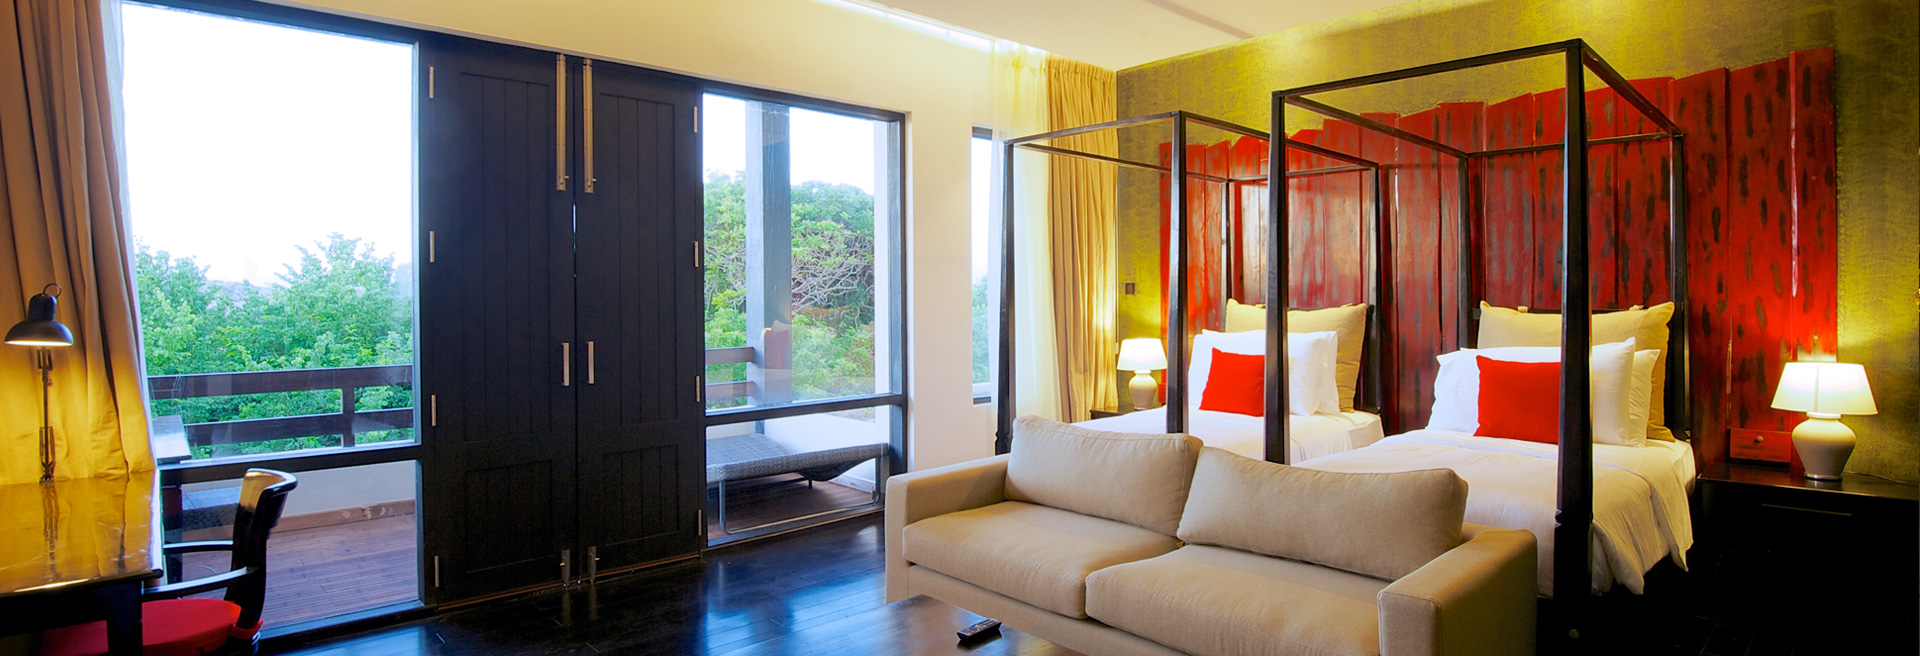 Yala national park luxury bed room accommodation